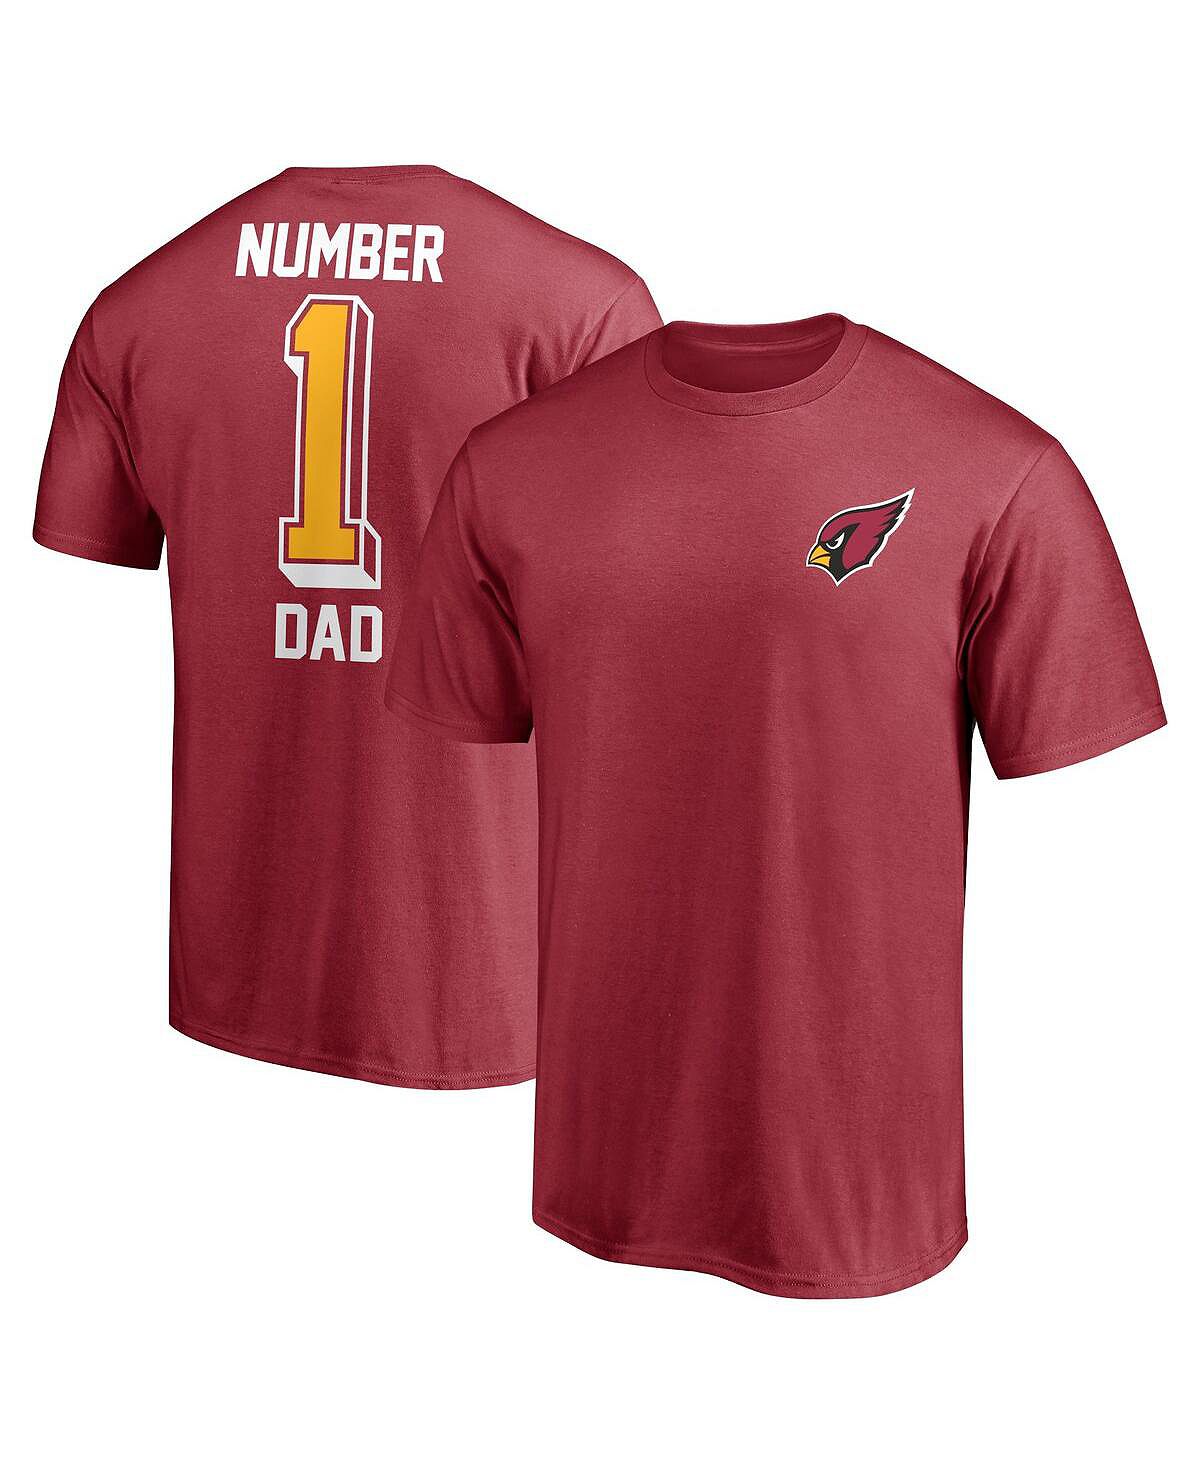 Мужская брендовая футболка cardinal arizona cardinals #1 dad Fanatics